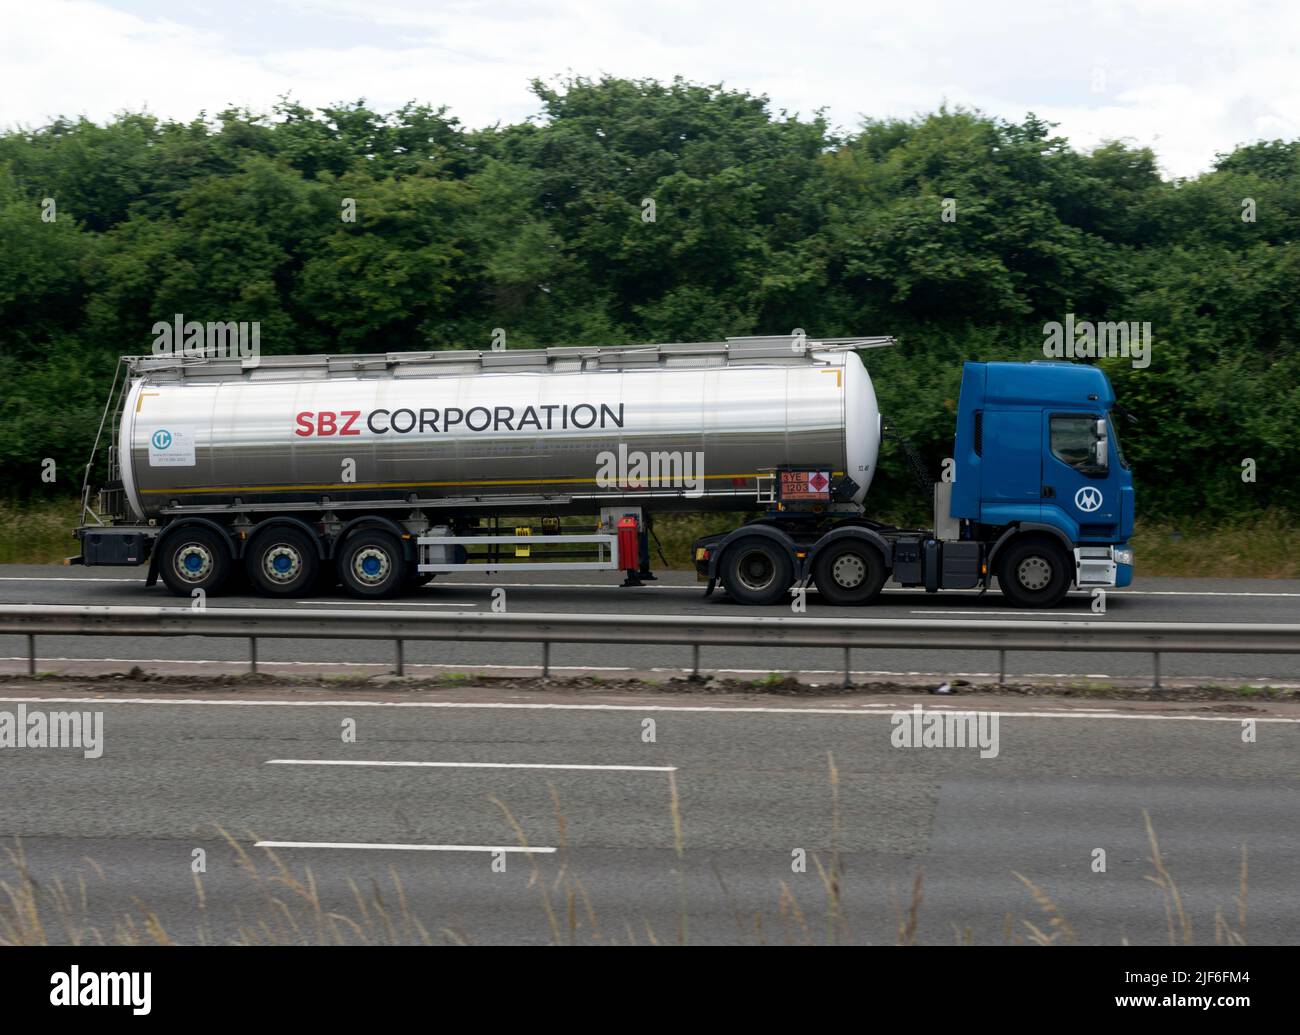 Tankwagen der SBZ Corporation auf der Autobahn M40, Warwickshire, Großbritannien Stockfoto